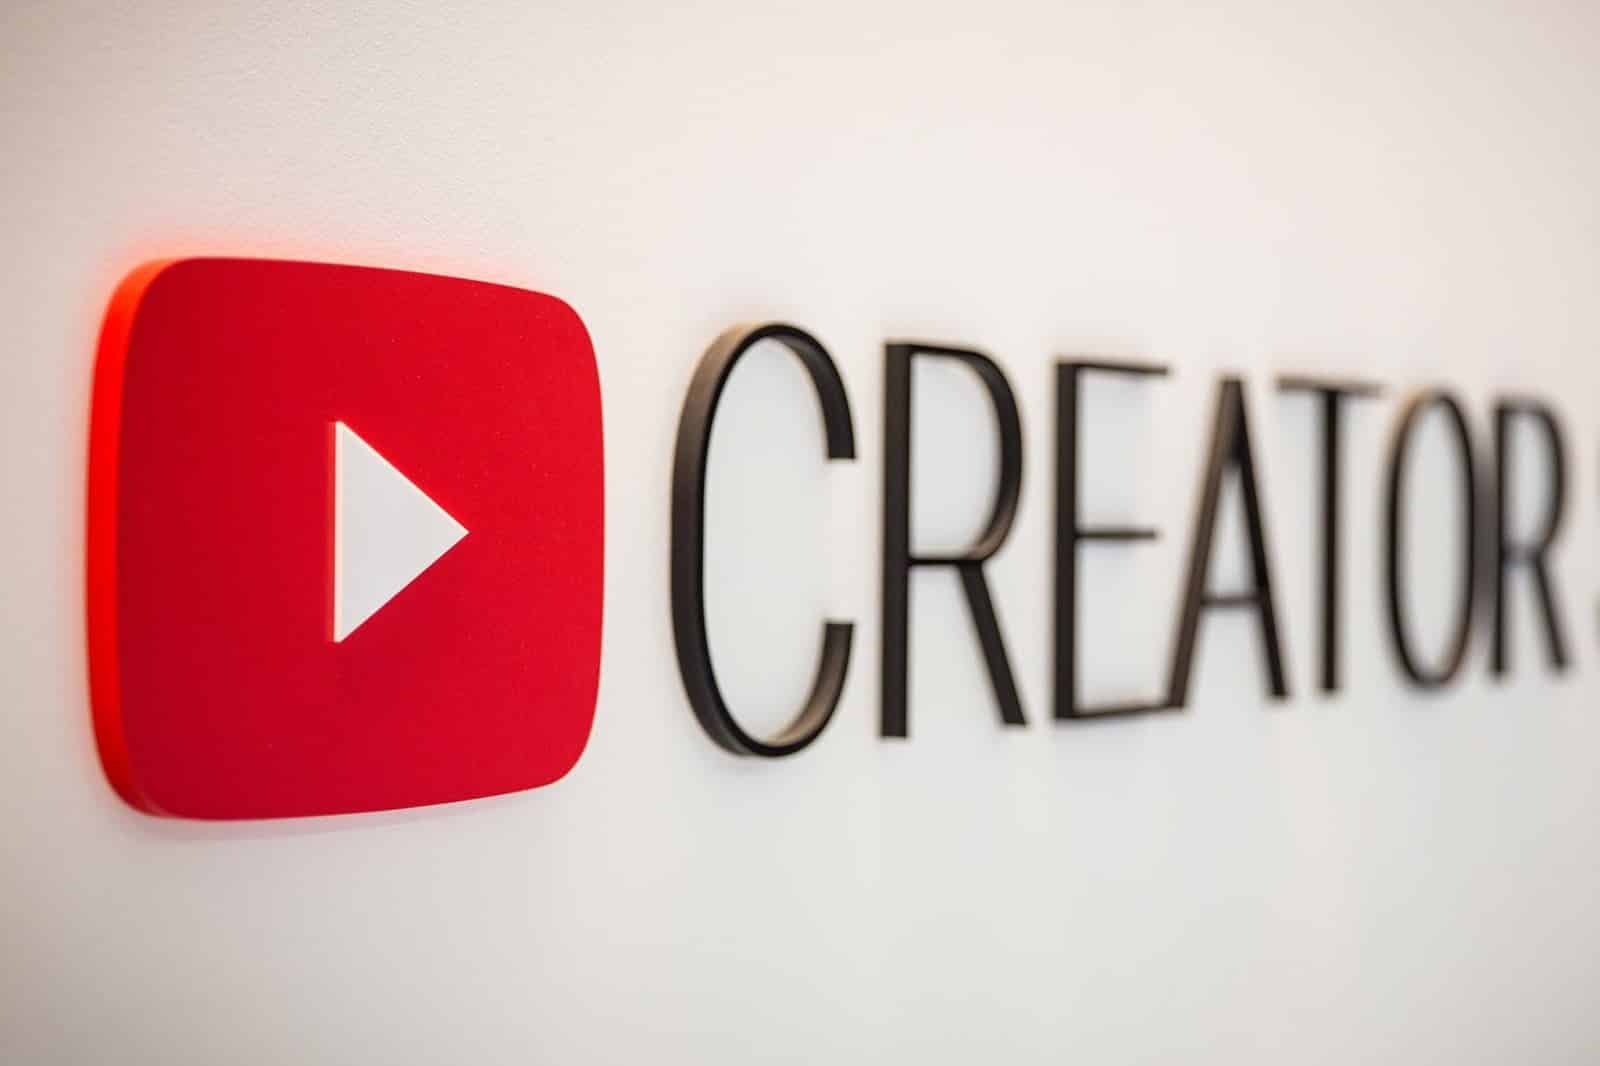 Youtube aggiorna alcune funzioni per i creators che fanno live streaming